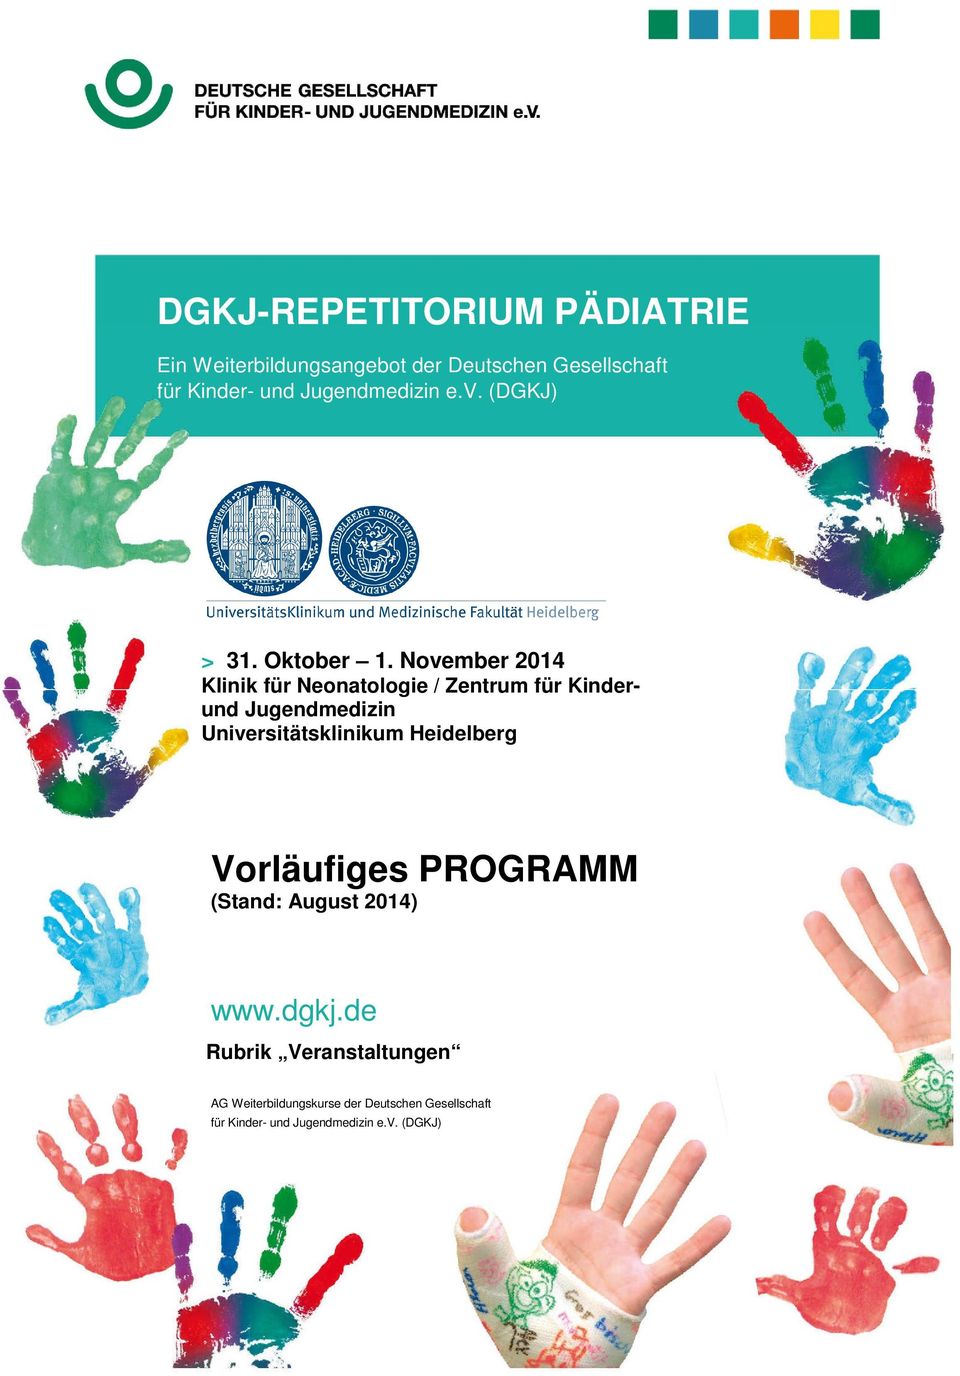 November 2014 Klinik für Neonatologie / Zentrum für Kinderund Jugendmedizin Universitätsklinikum